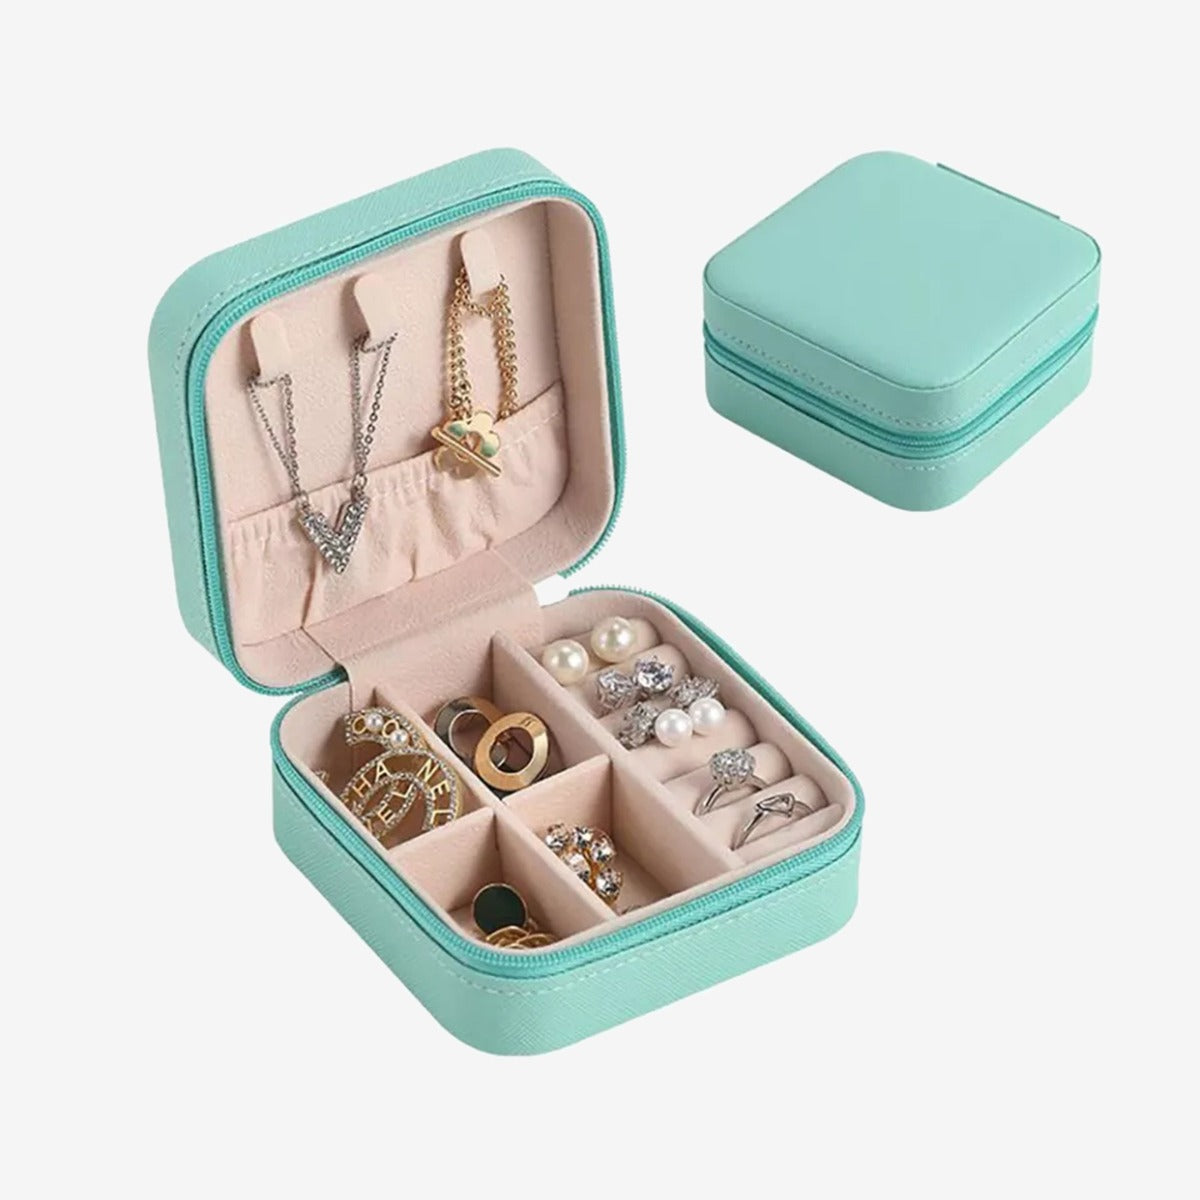 Mini Portable Jewelry box Organizer